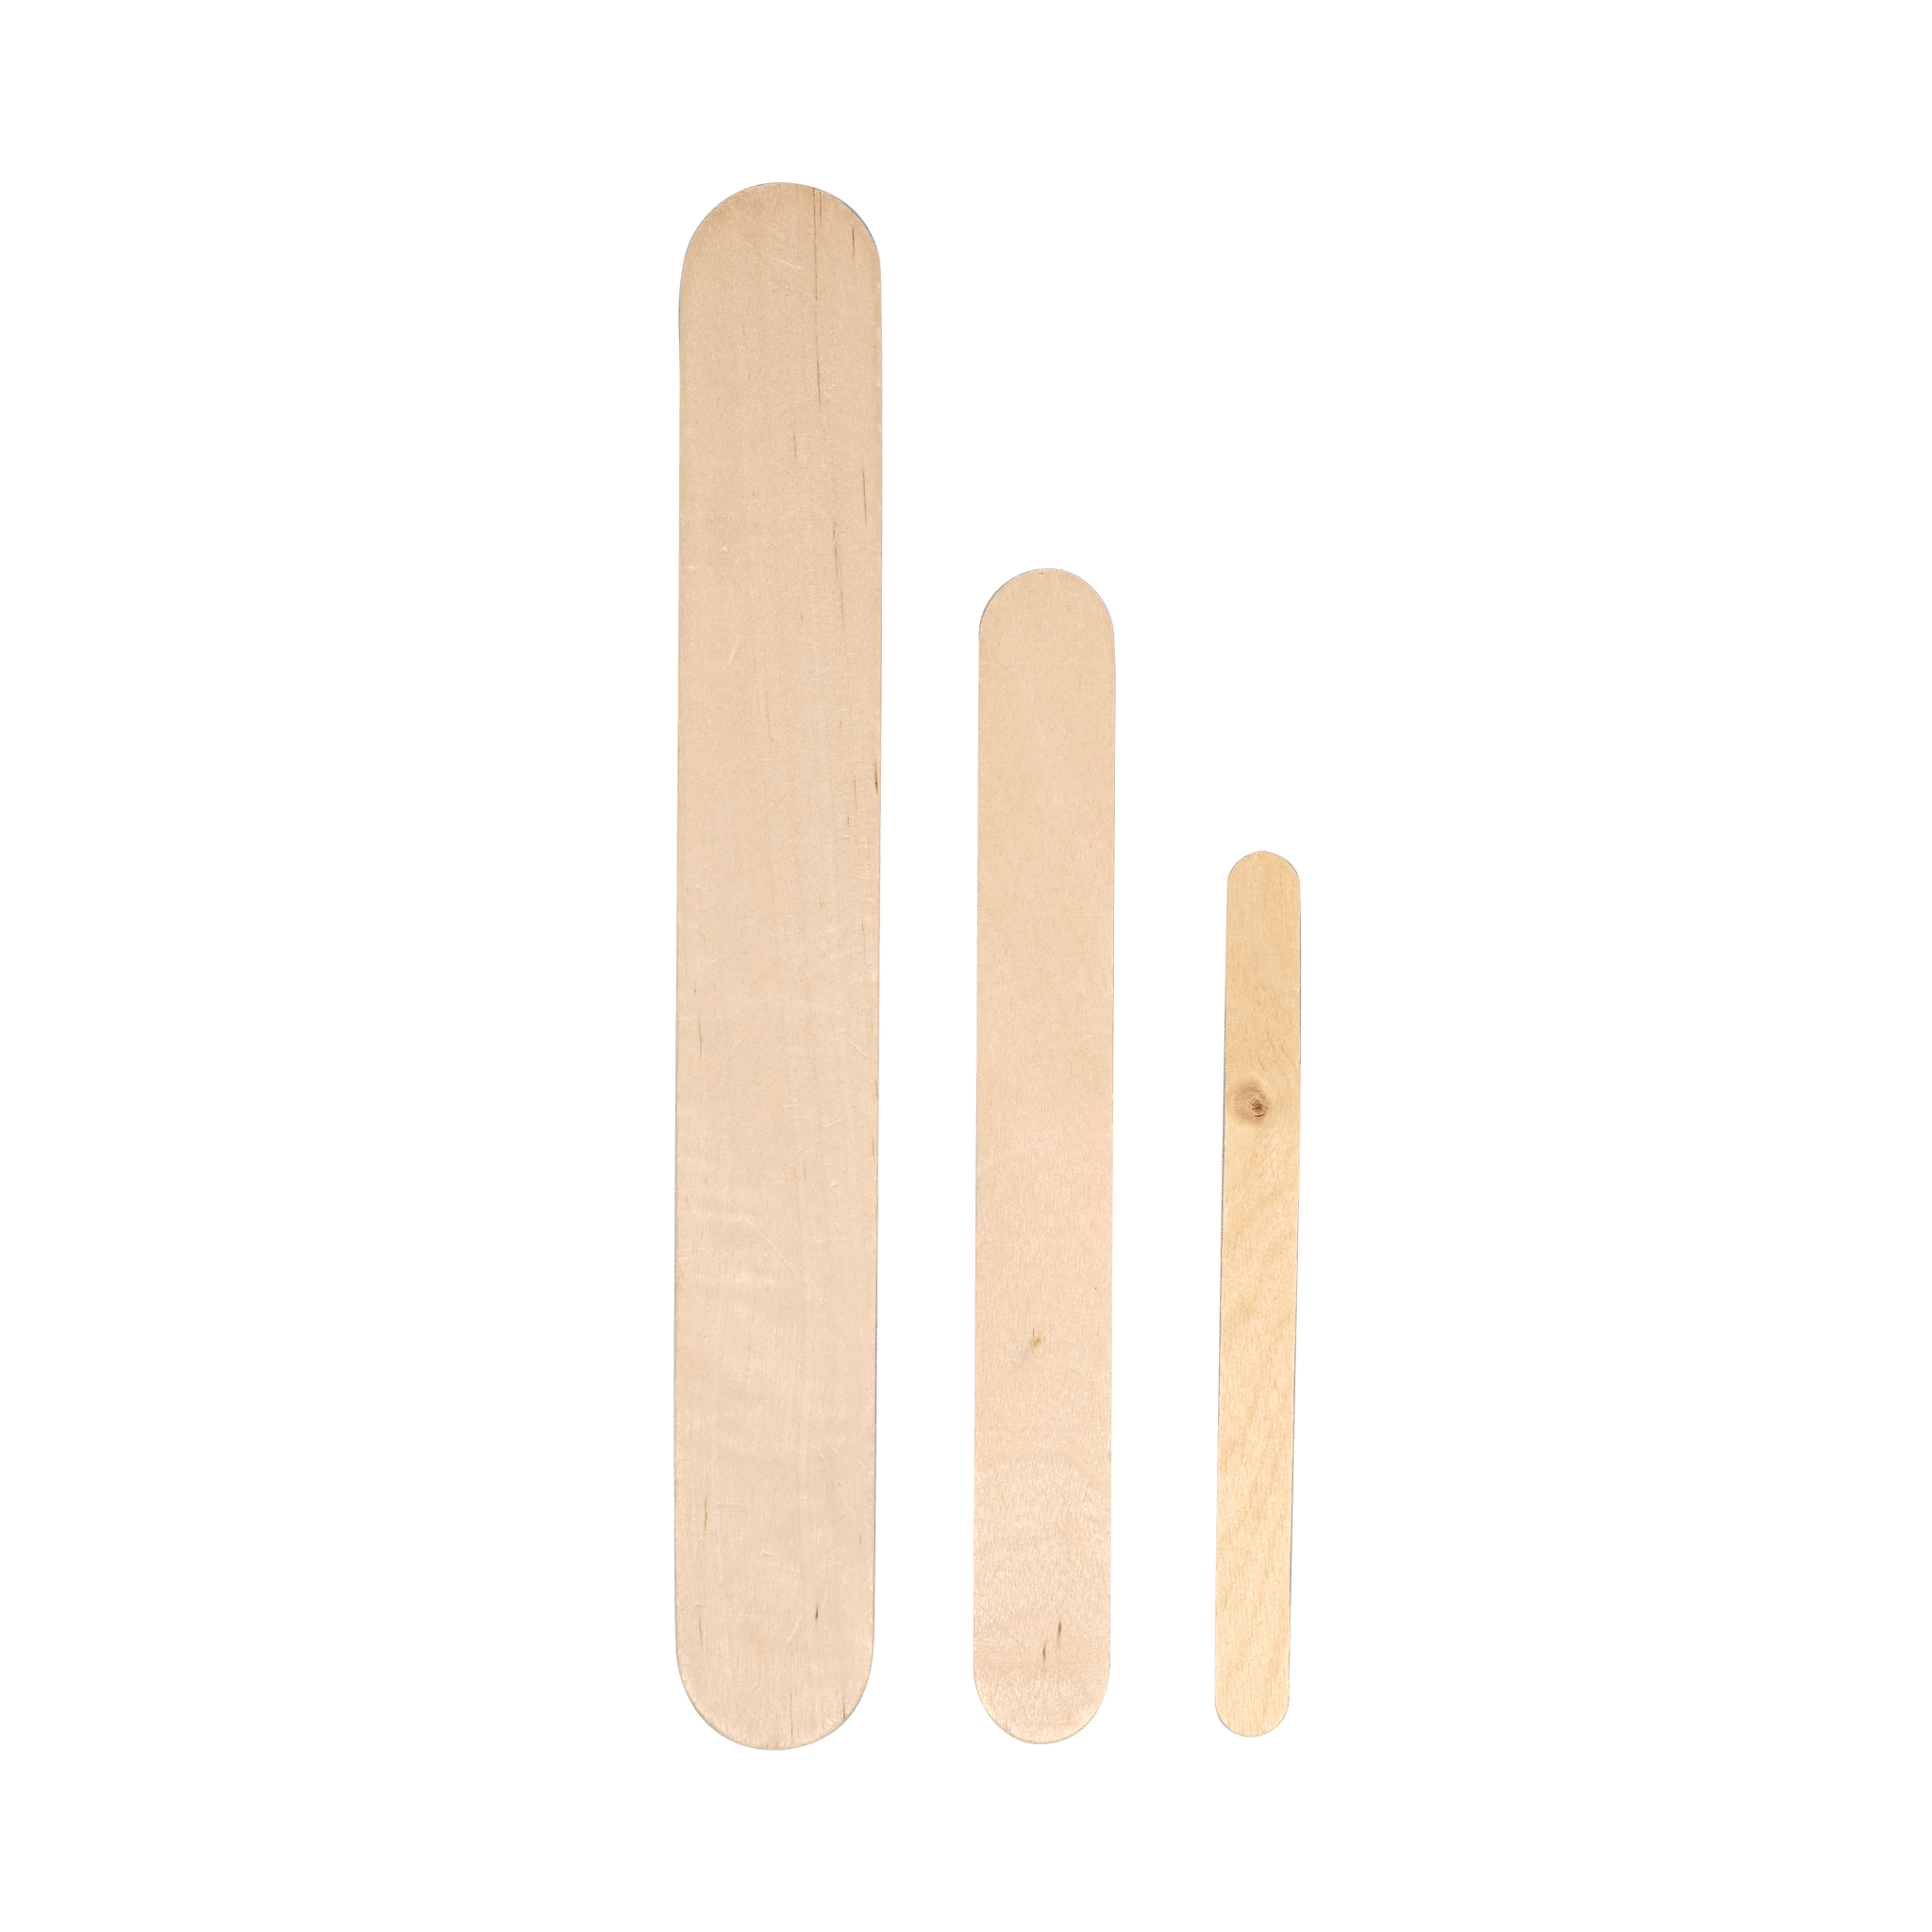 Stir Sticks - Matuska Taxidermy Supply Company